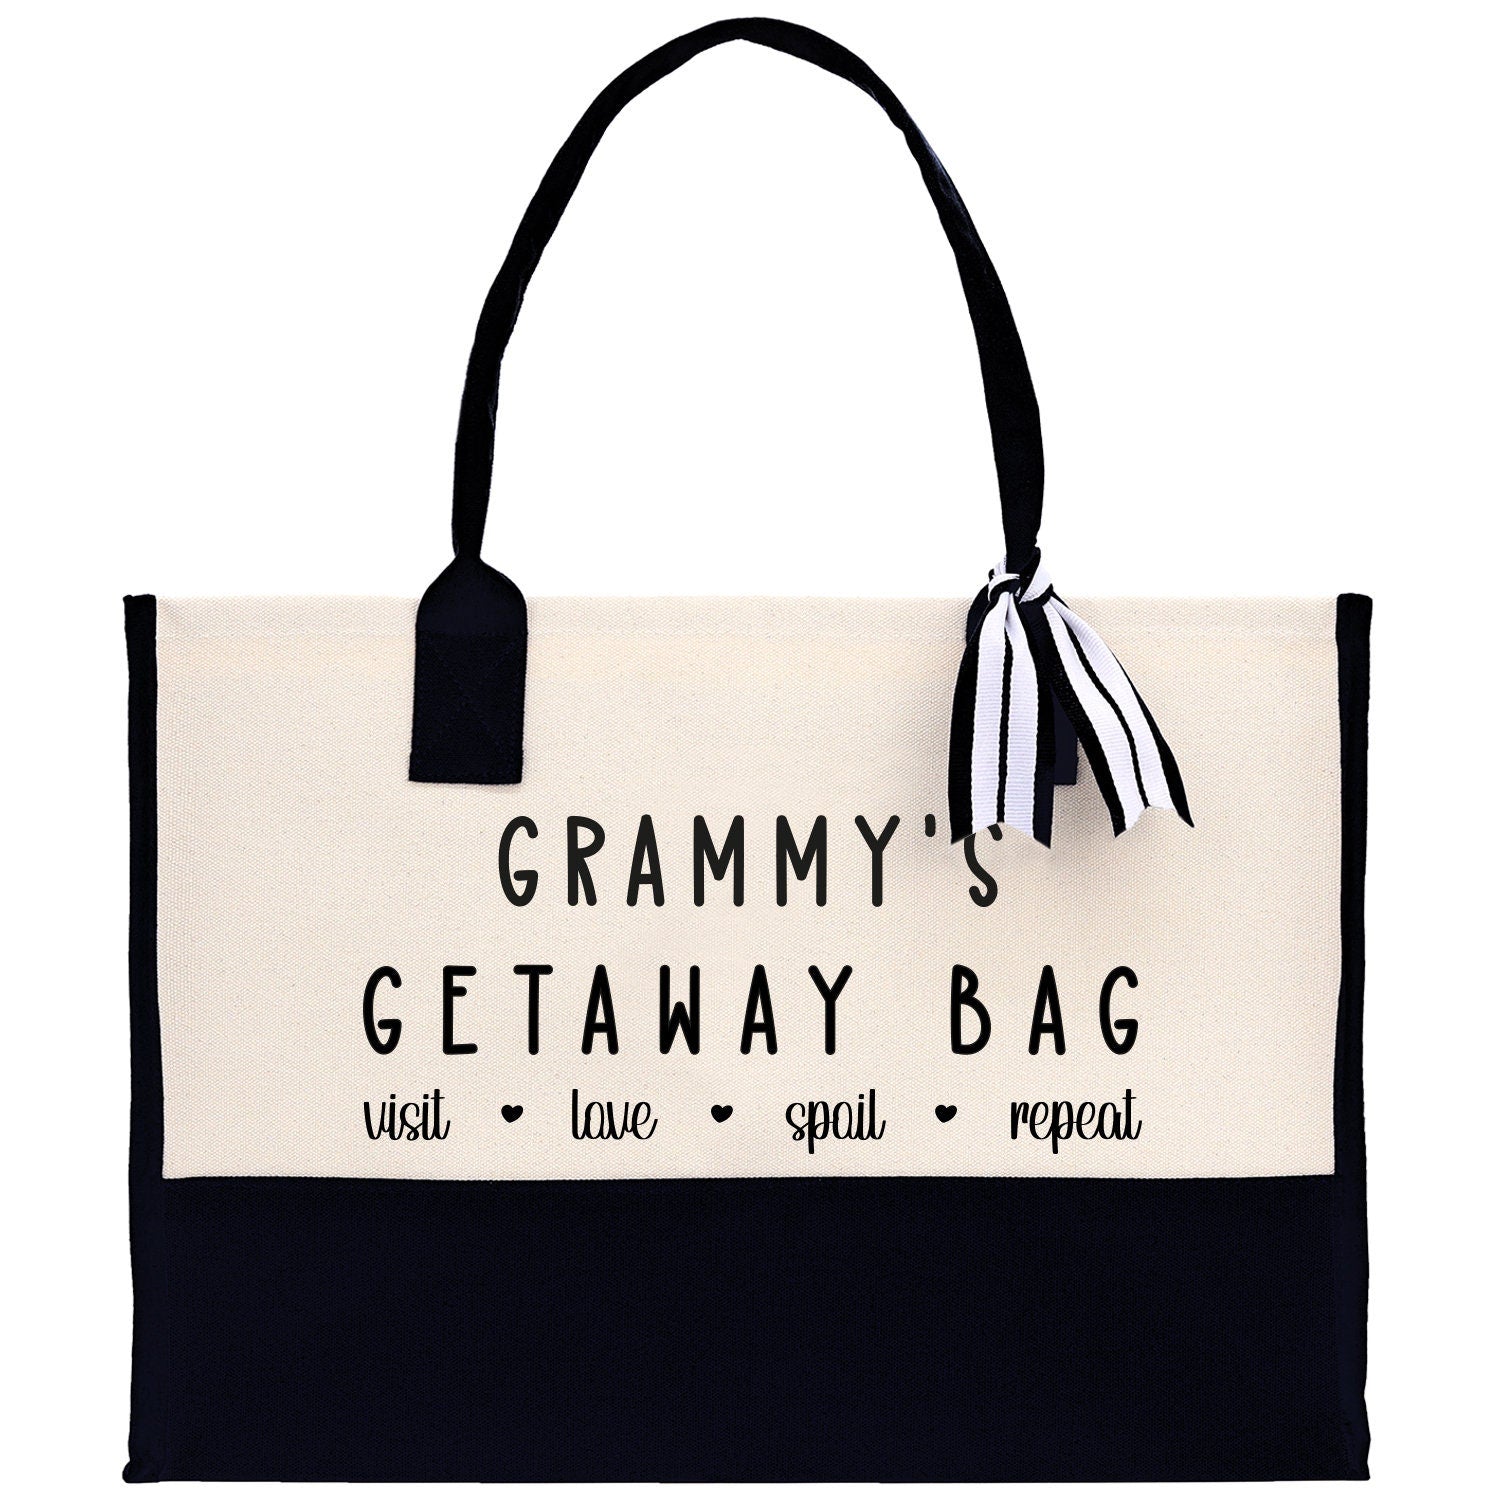 Grandma Tote Bag Grandma's Getaway Bag Grandma Nana Bag Grandma Gift Bag Shopping Bag Mothers Day Gift Live Love Spoil Bag Grandma GM1009